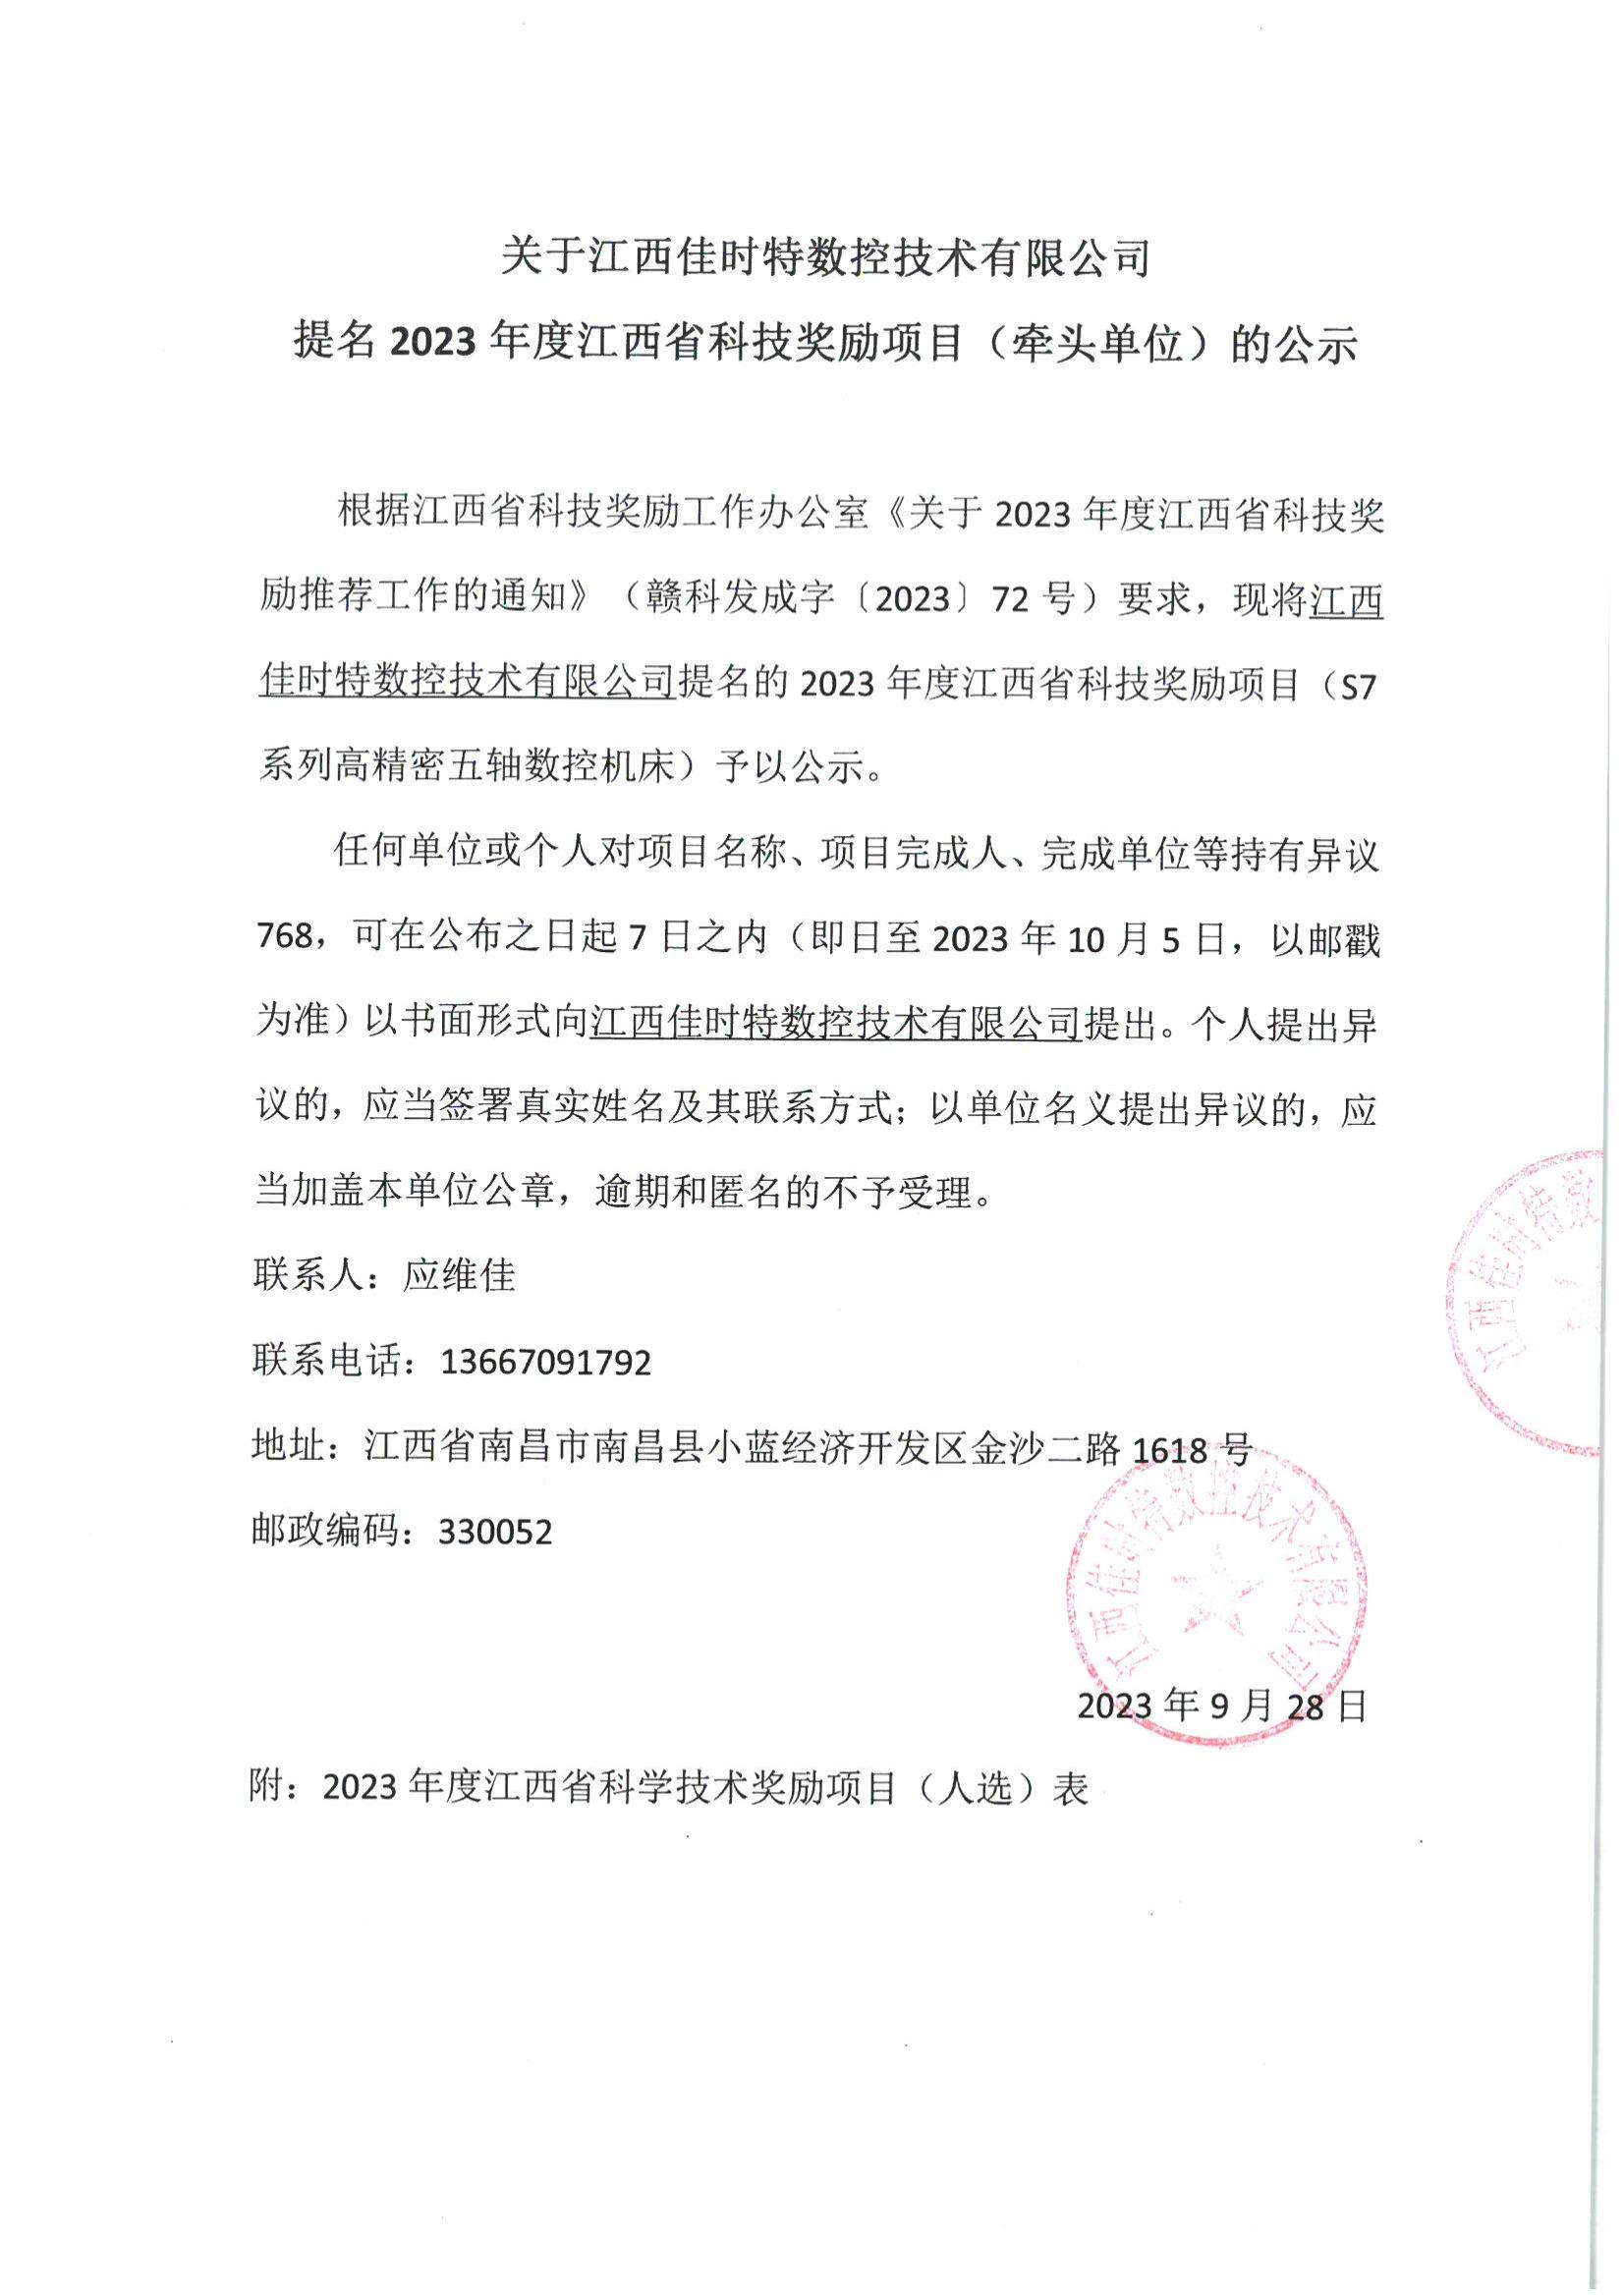 关于江西佳时特数控技术有限公司提名2023年度江西省科技奖励项目（牵头单位）的公示